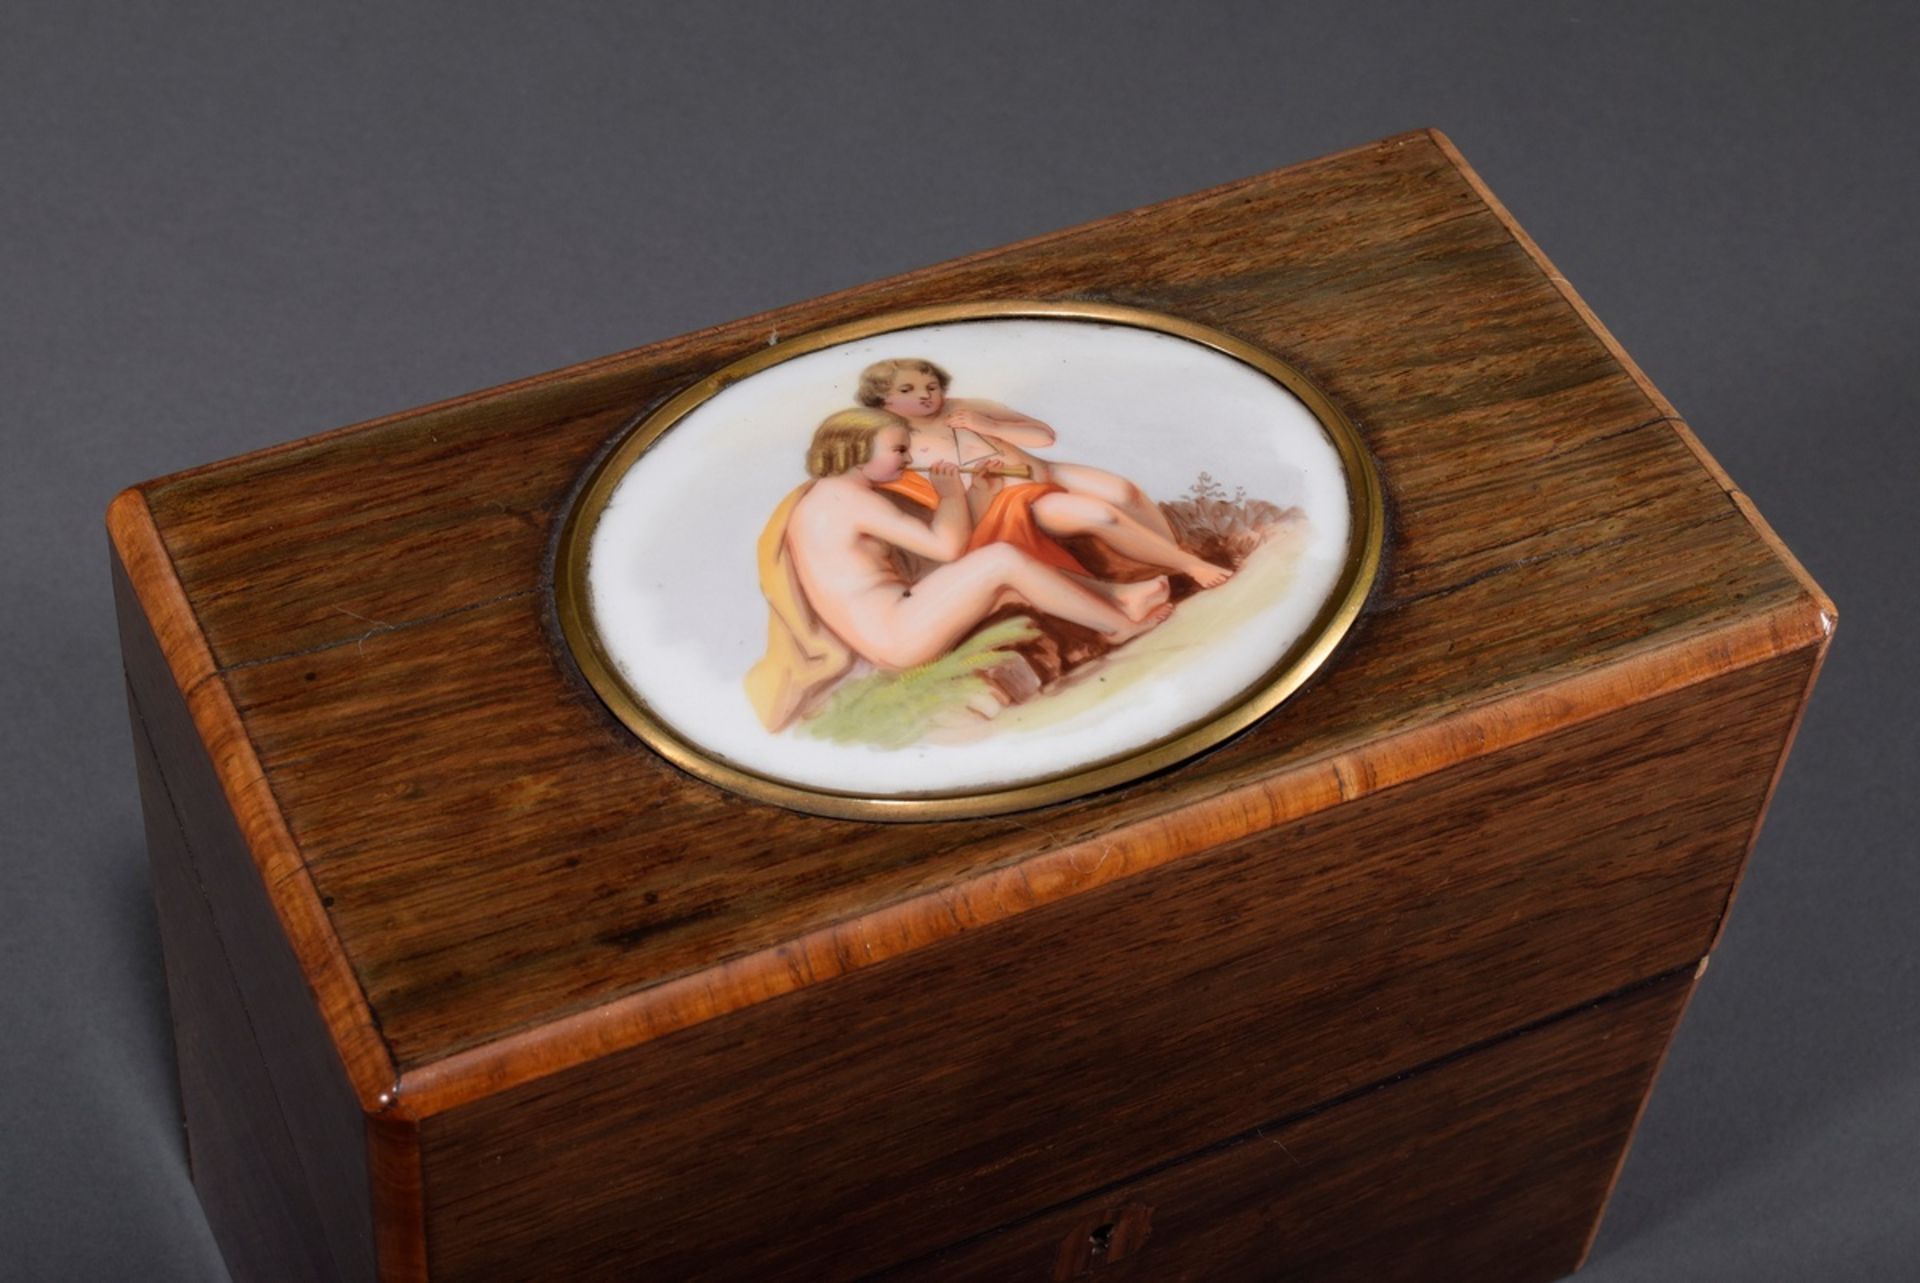 Hochformatiger Holz Kasten mit ovaler Porzellan | Tall wooden box with oval porcelain plaque and f - Bild 2 aus 4